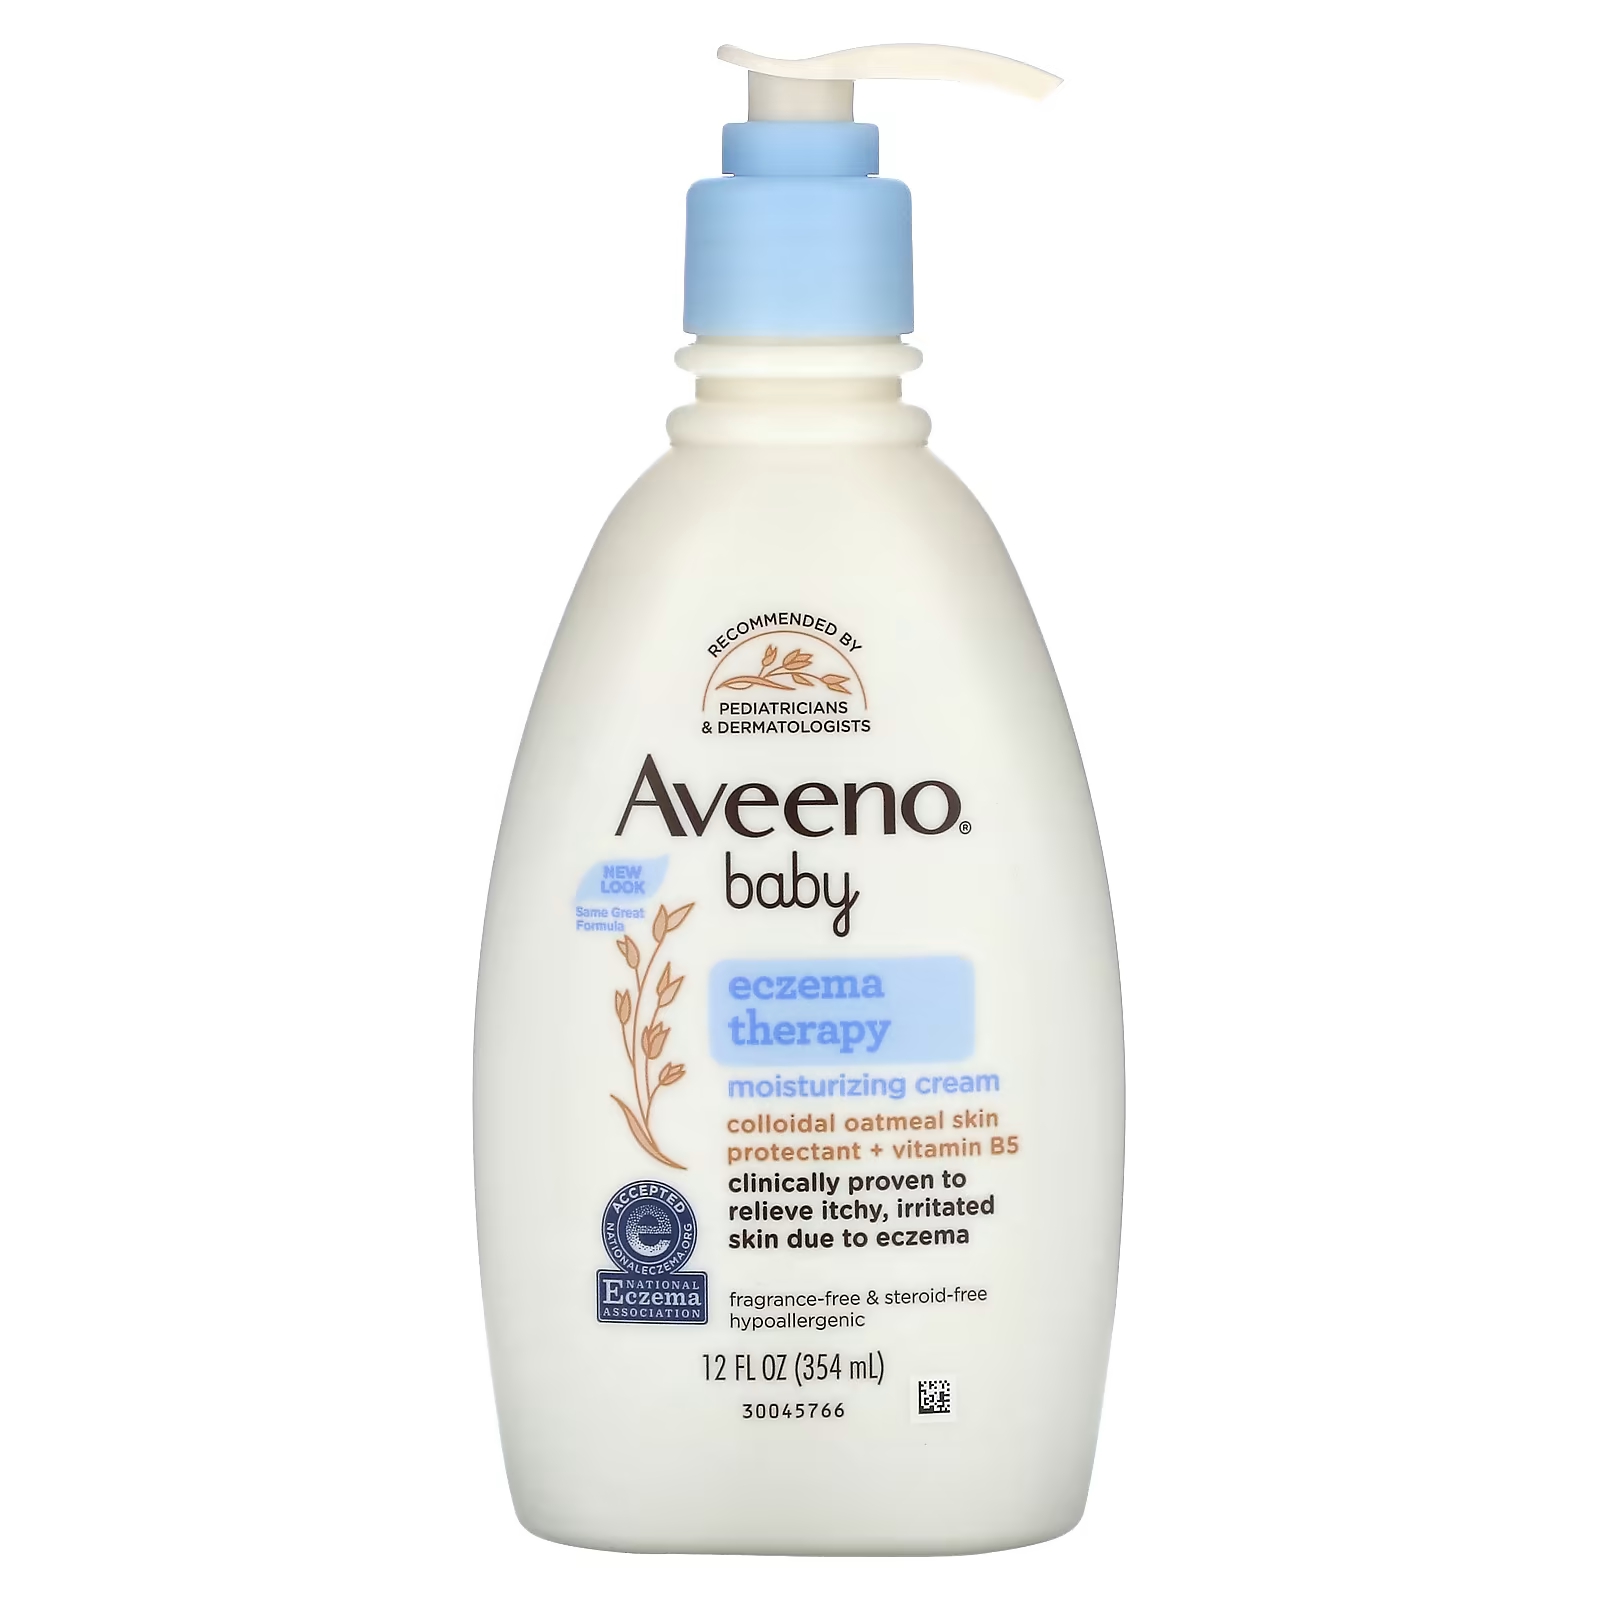 Крем увлажняющий Aveeno Baby Eczema Therapy без ароматизаторов, 354 мл aveeno eczema therapy moisturizing cream fragrance free 12 fl oz 354 ml